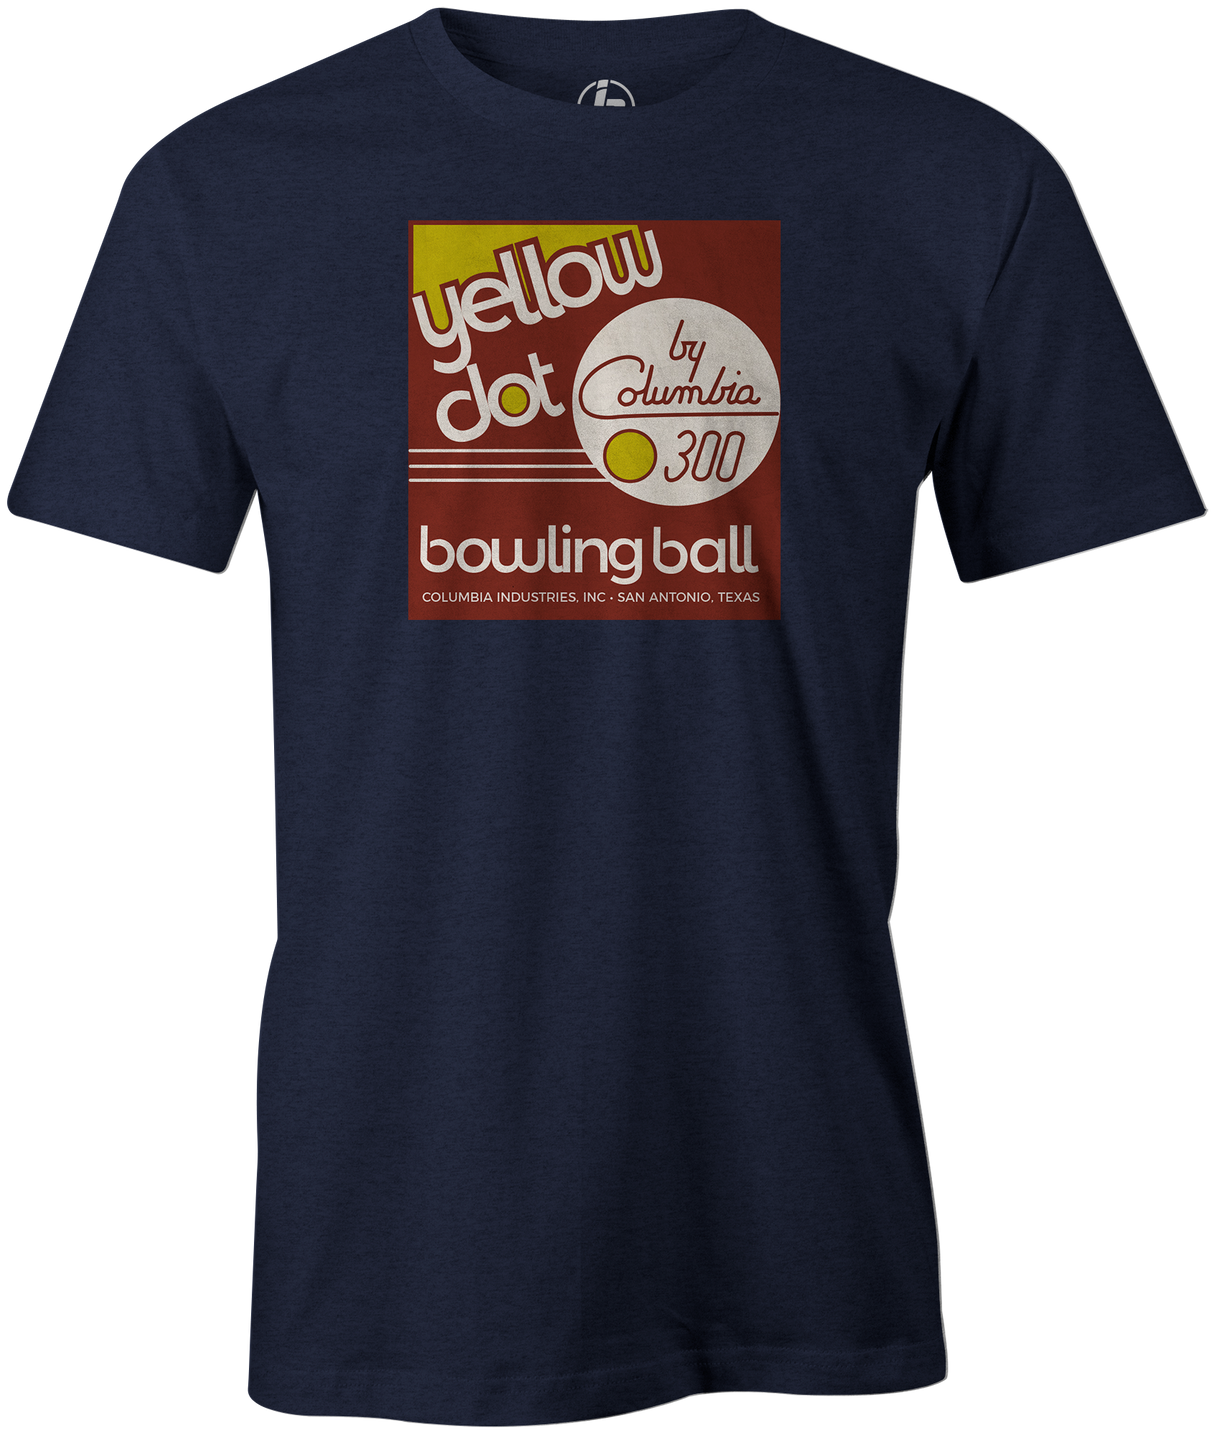 Yellow Dot Men's T-shirt, Navy, Retro, Bowling, Tshirt, tee, tee-shirt, tee shirt. Bowling ball. Columbia 300.